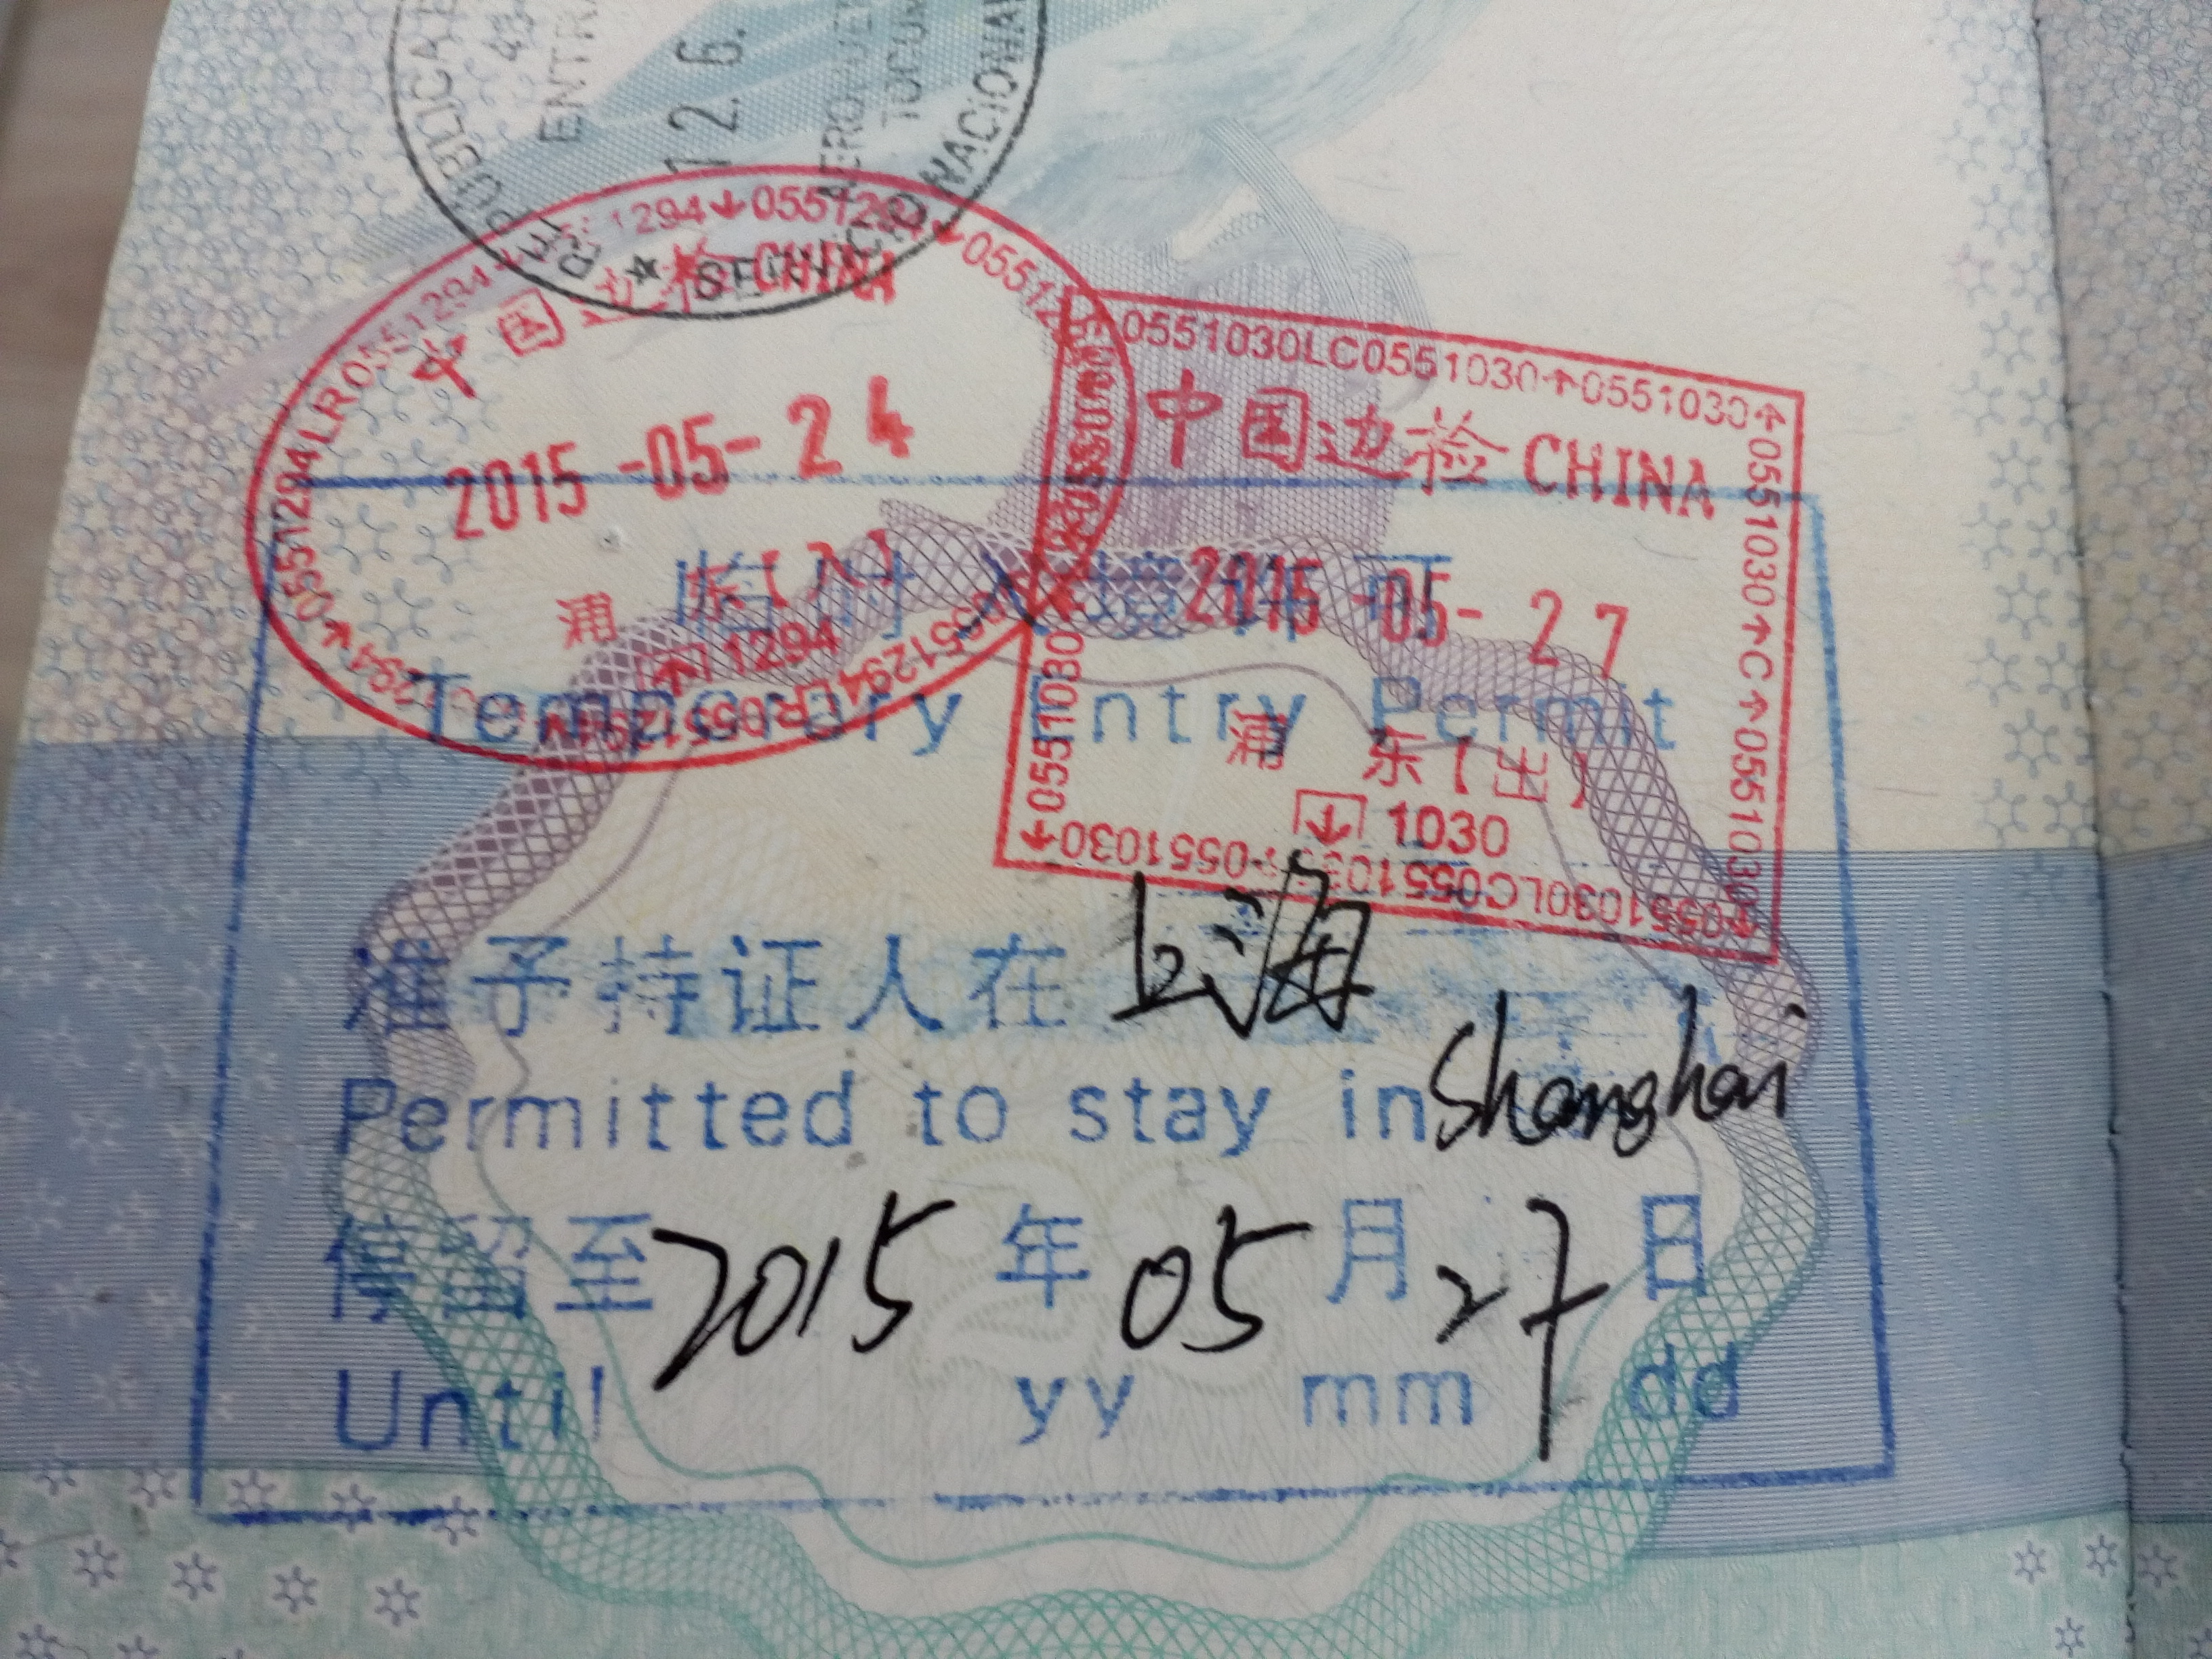 Transit visa. Китайская виза. Виза в Китай. Транзитная виза в Китай. Китай штамп о депортации.